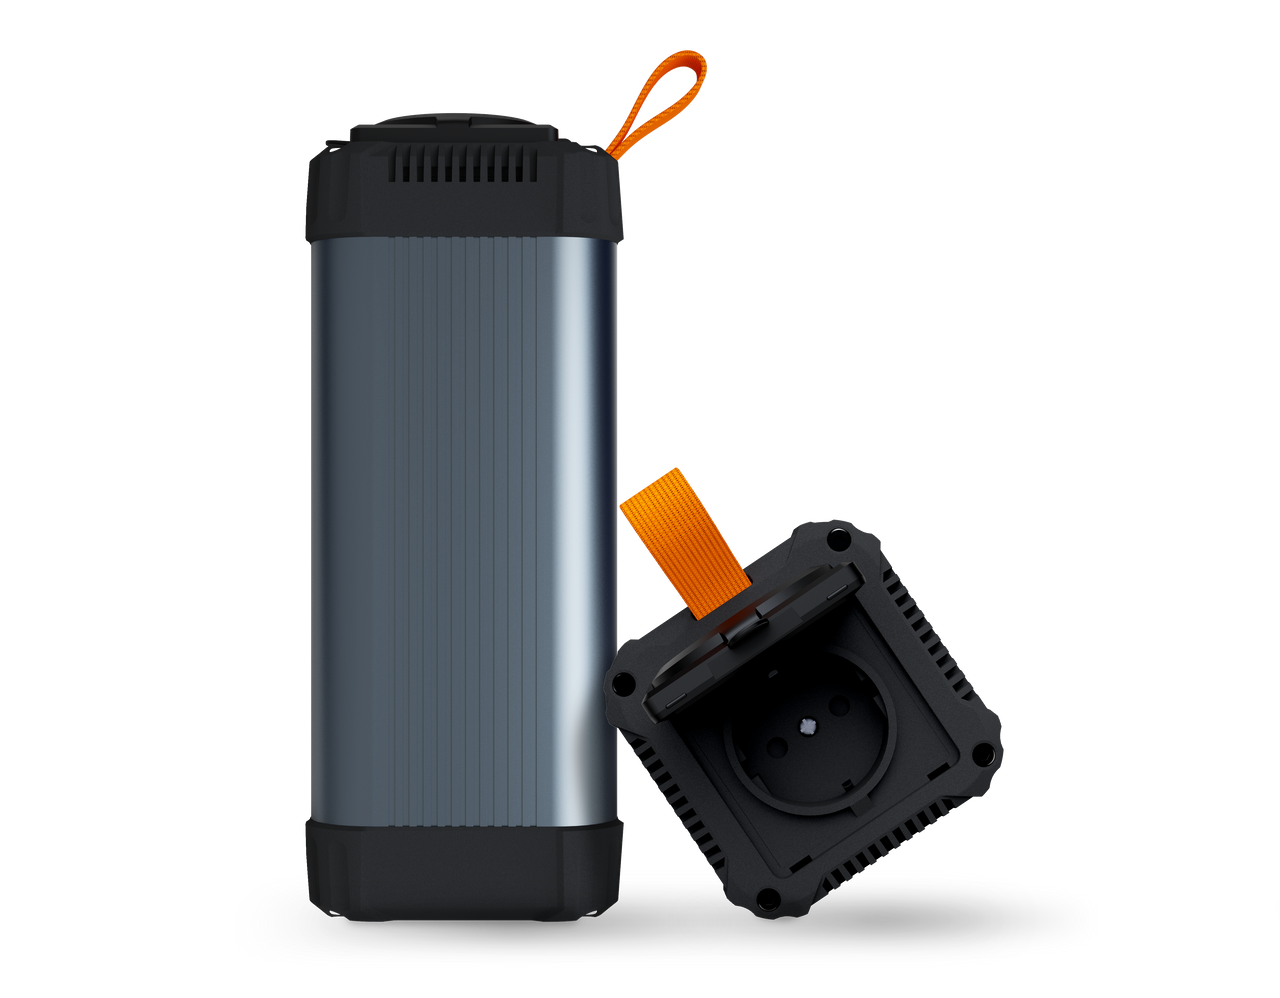 Xtorm Xtreme Prise de Courant Portable 100W Batterie Externe 25 600 mAh,  60W USB-C, 18W USB-A / USB-C, Preuve en Avion, Design Robuste, Gris -  Chargeurs batteries et socles - Achat 